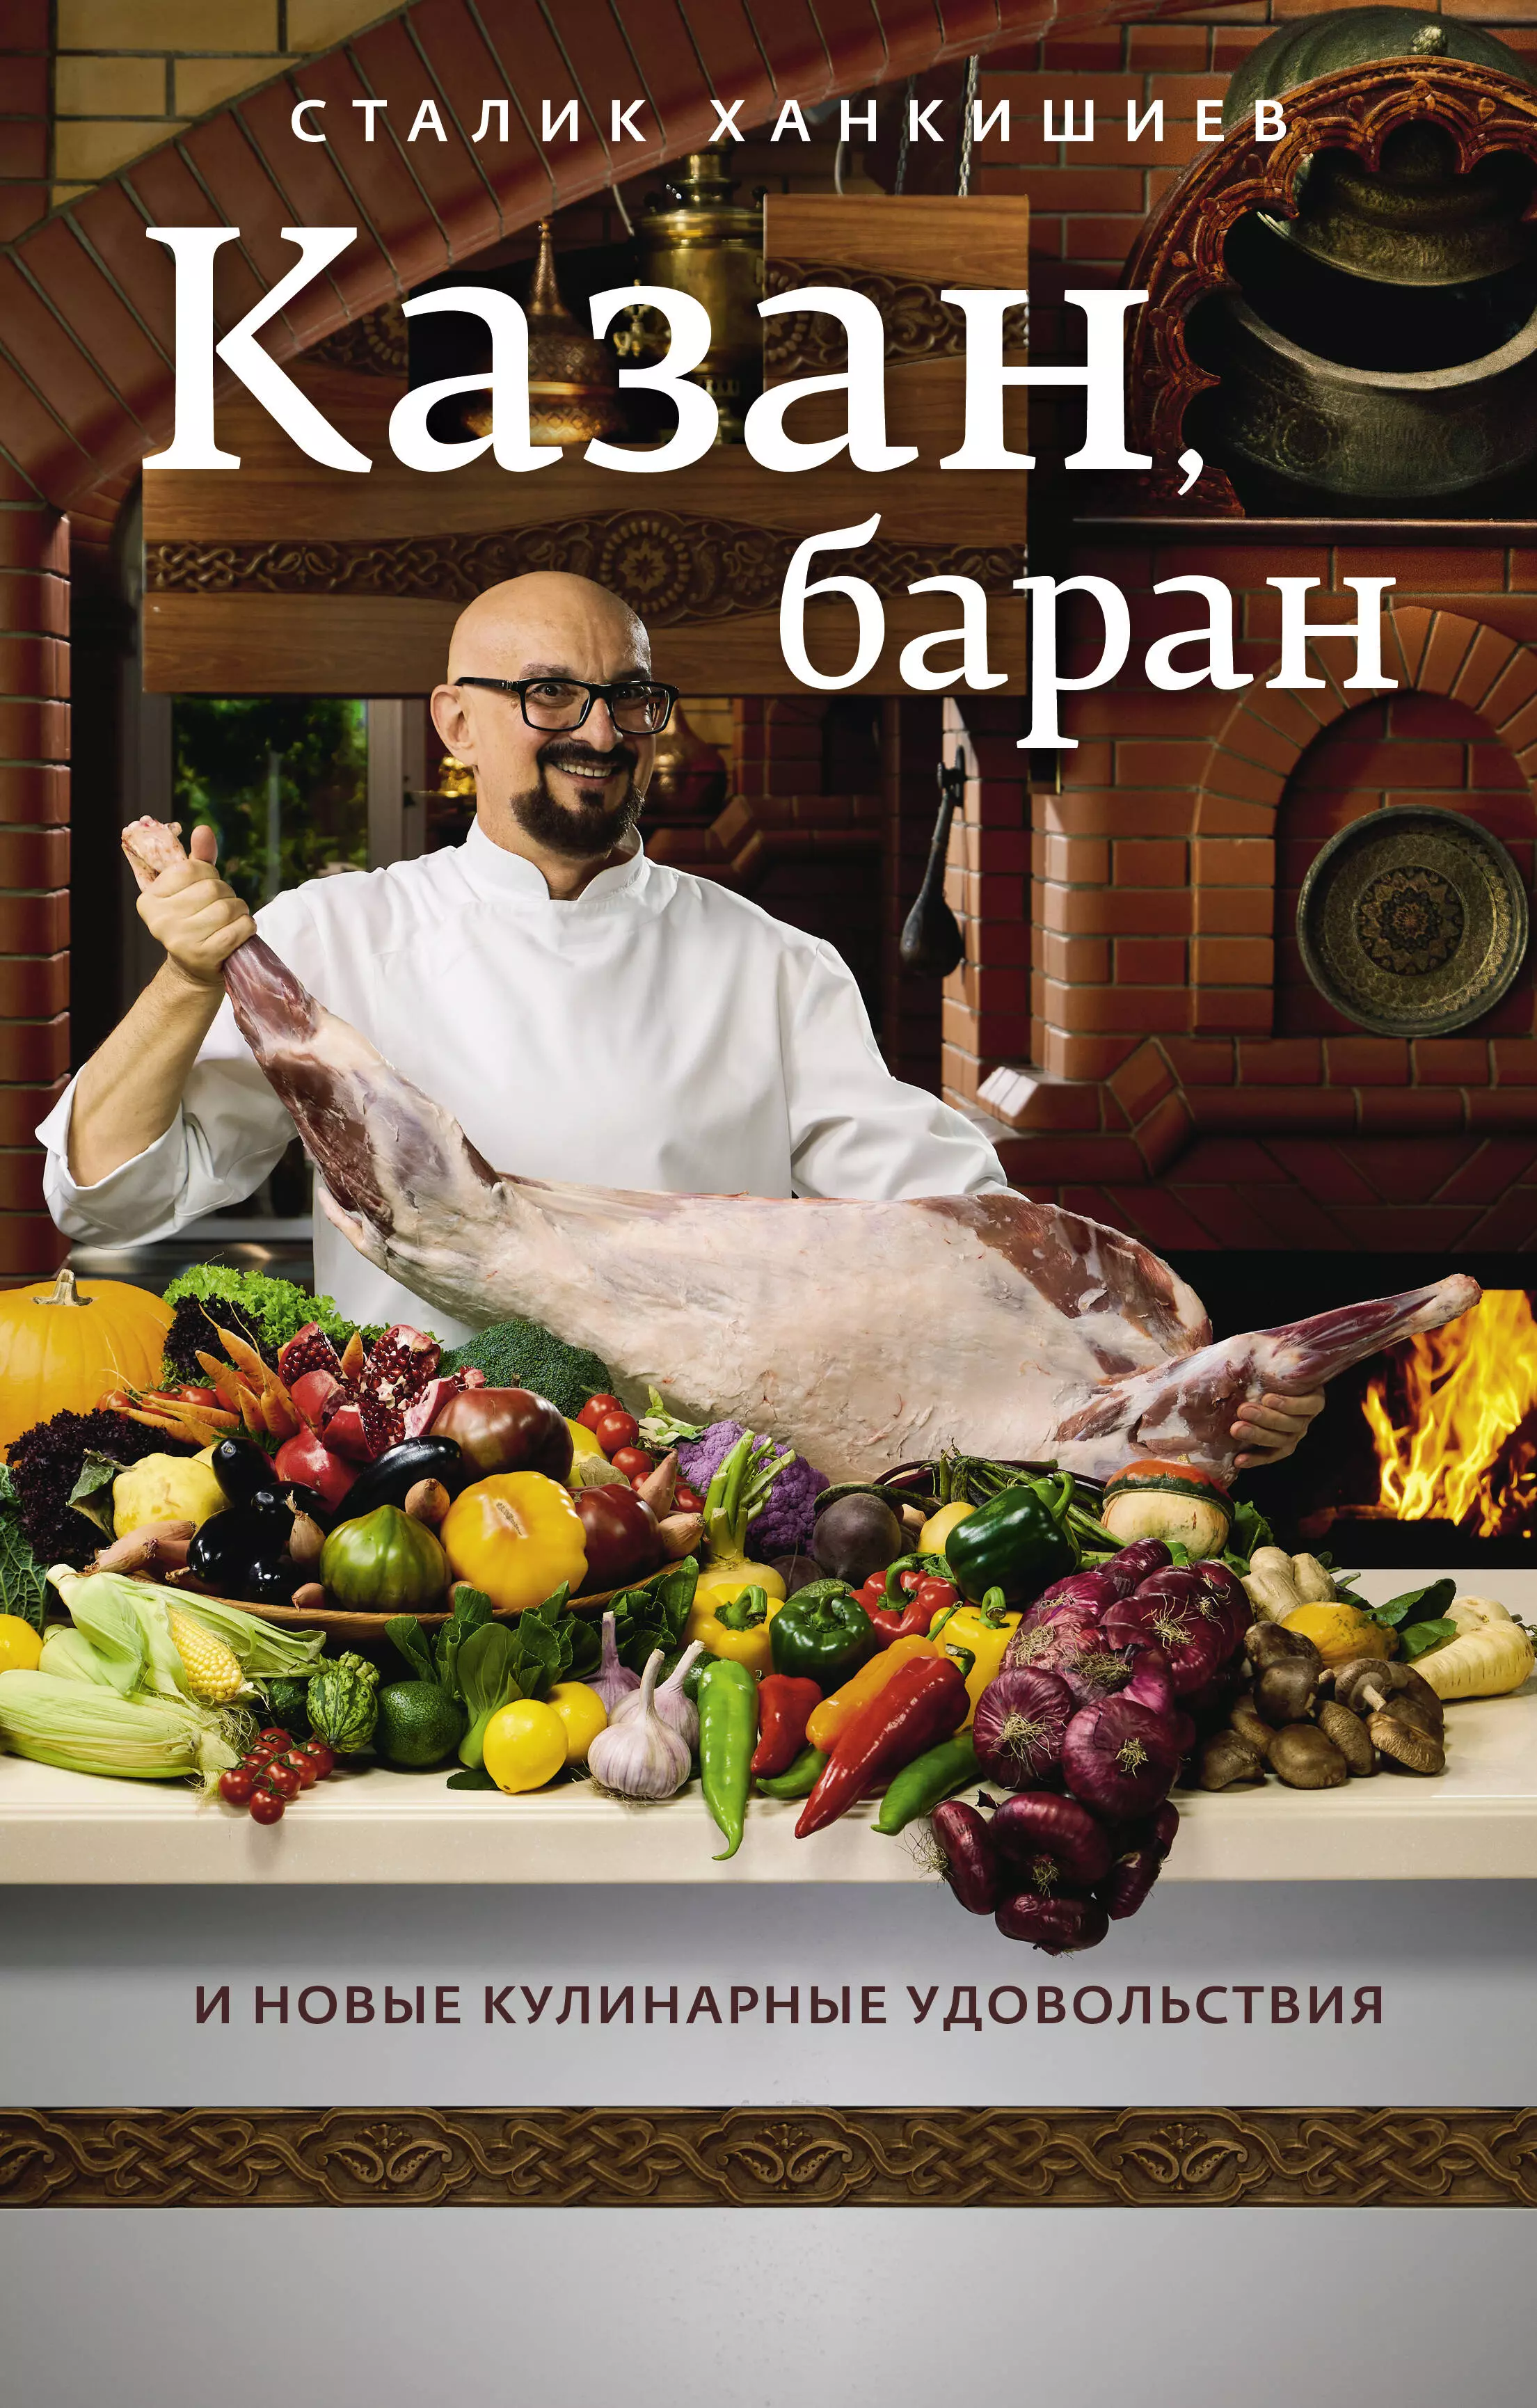 Ханкишиев Сталик - Казан, баран и новые кулинарные удовольствия